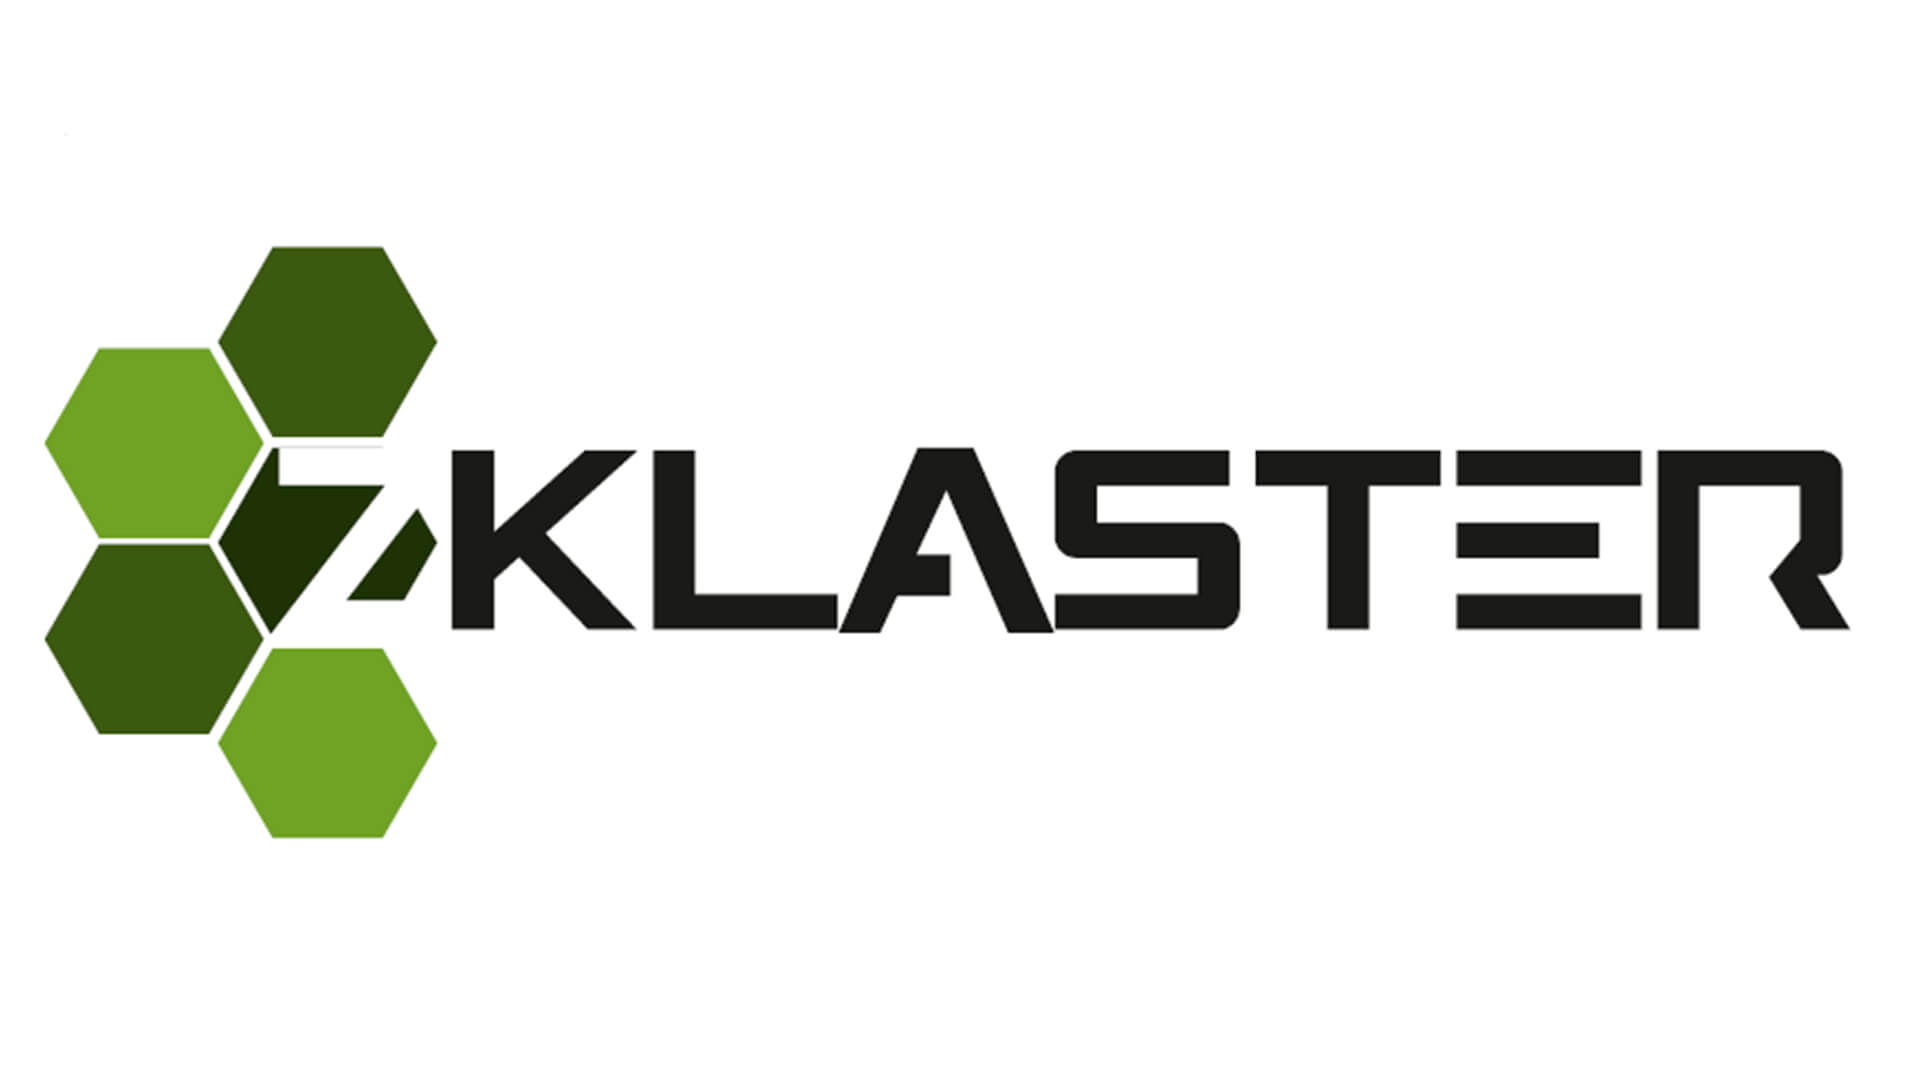 Klaster logo